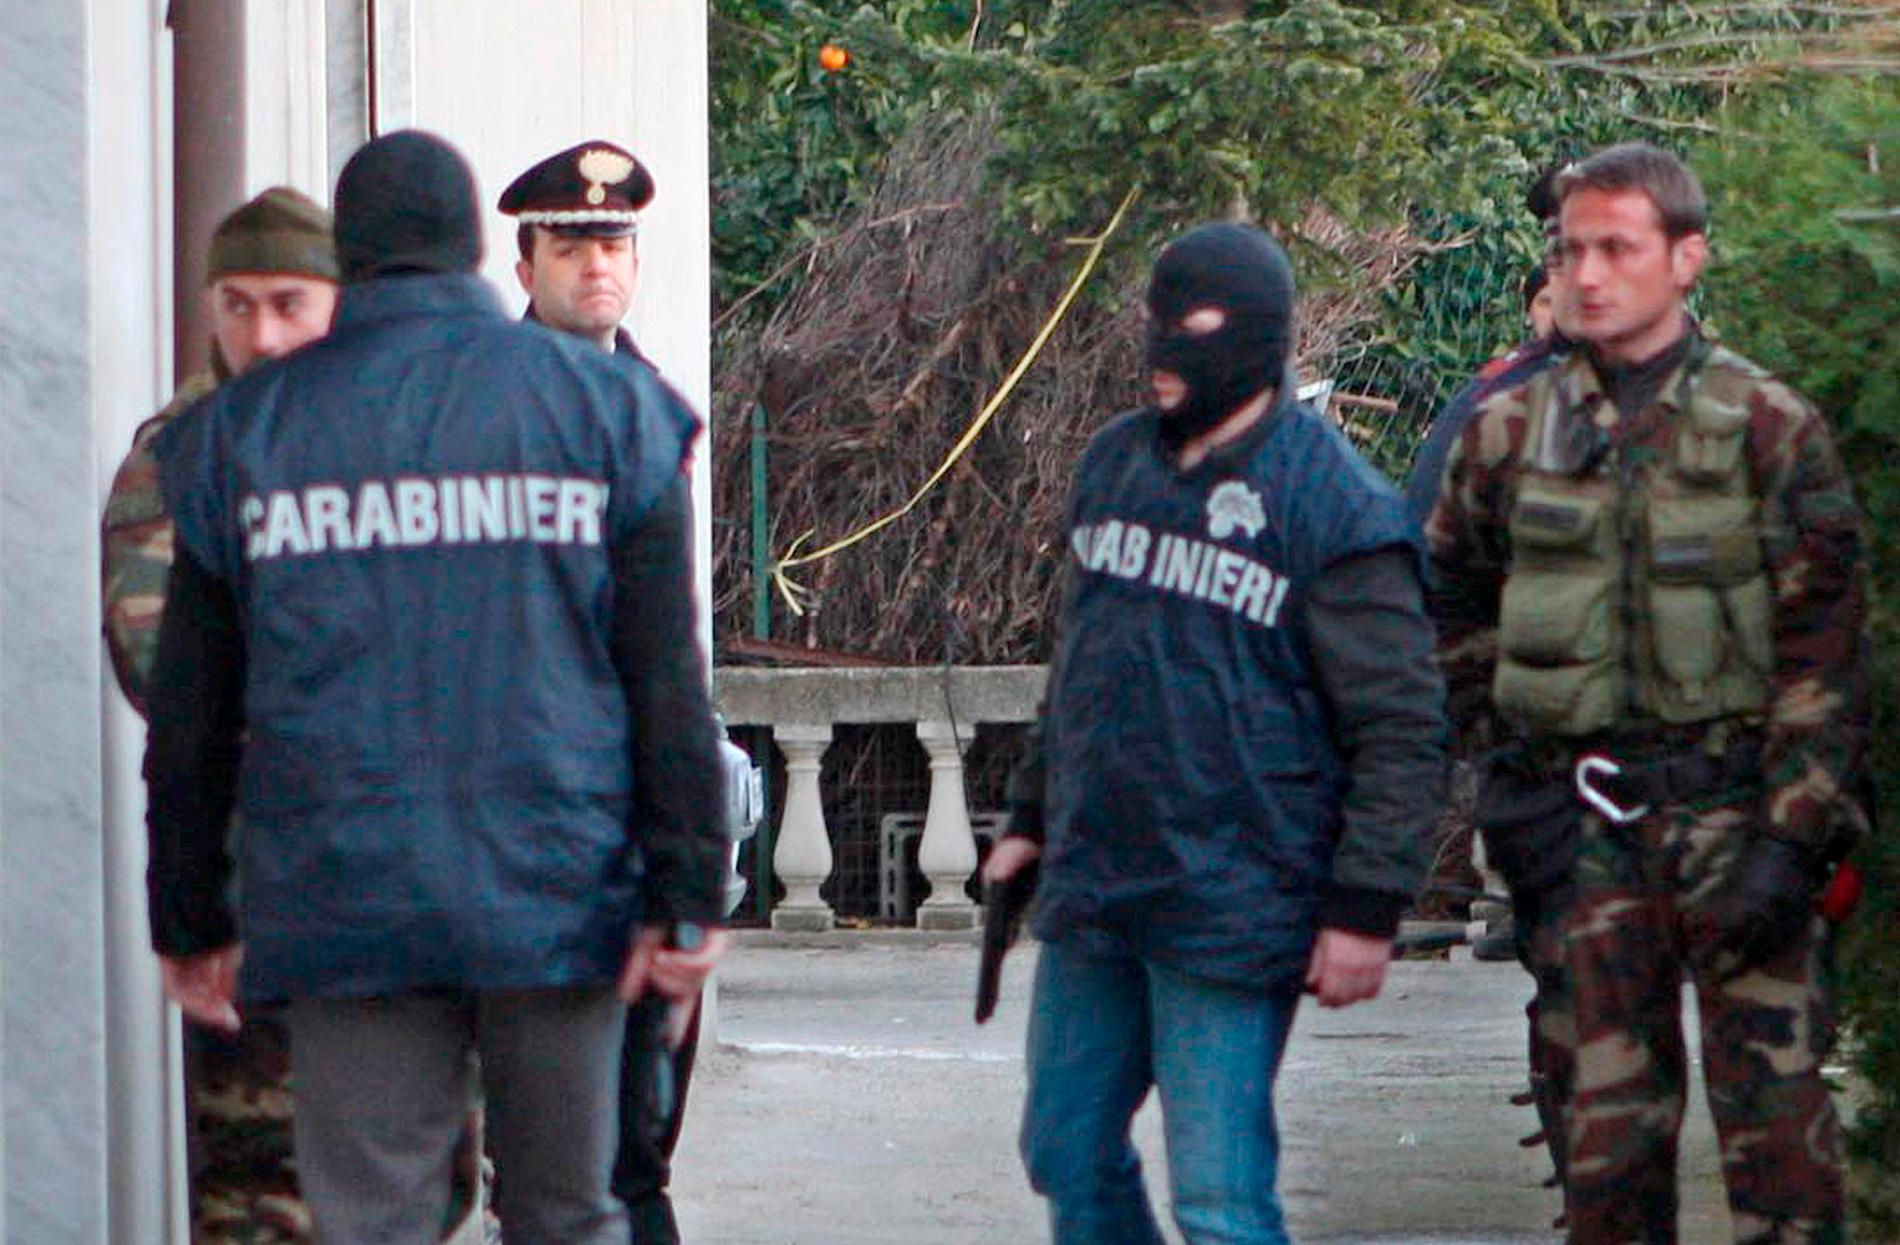 Italienska polisen i en operation mot den italienska ’Ndrangheta-maffian.